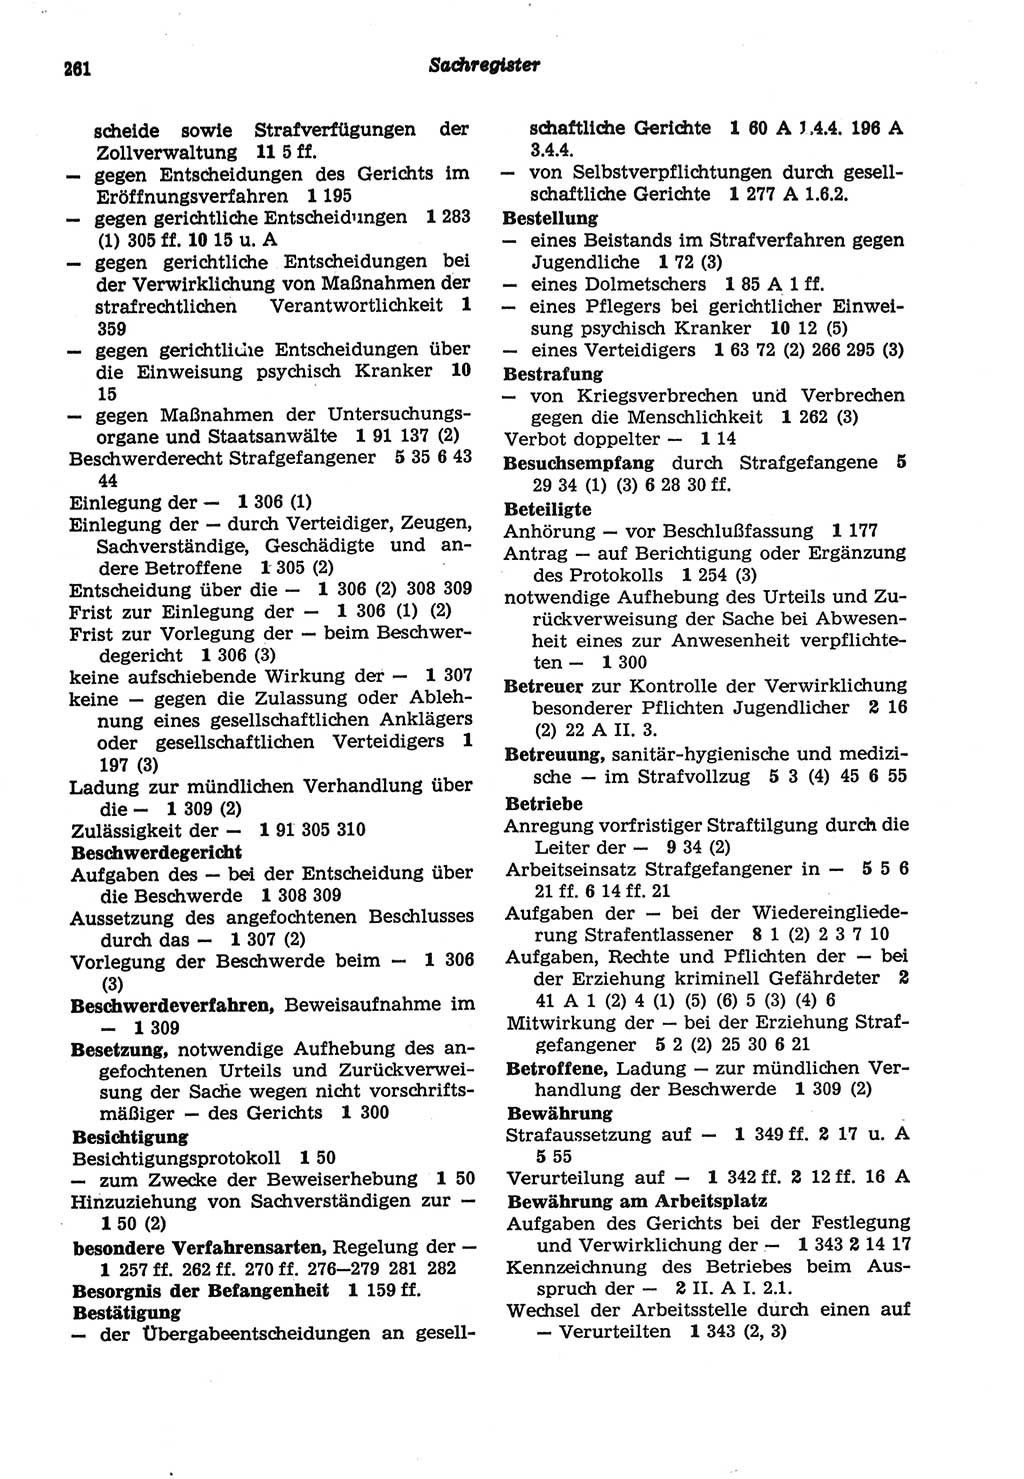 Strafprozeßordnung (StPO) der Deutschen Demokratischen Republik (DDR) sowie angrenzende Gesetze und Bestimmungen 1977, Seite 261 (StPO DDR Ges. Best. 1977, S. 261)